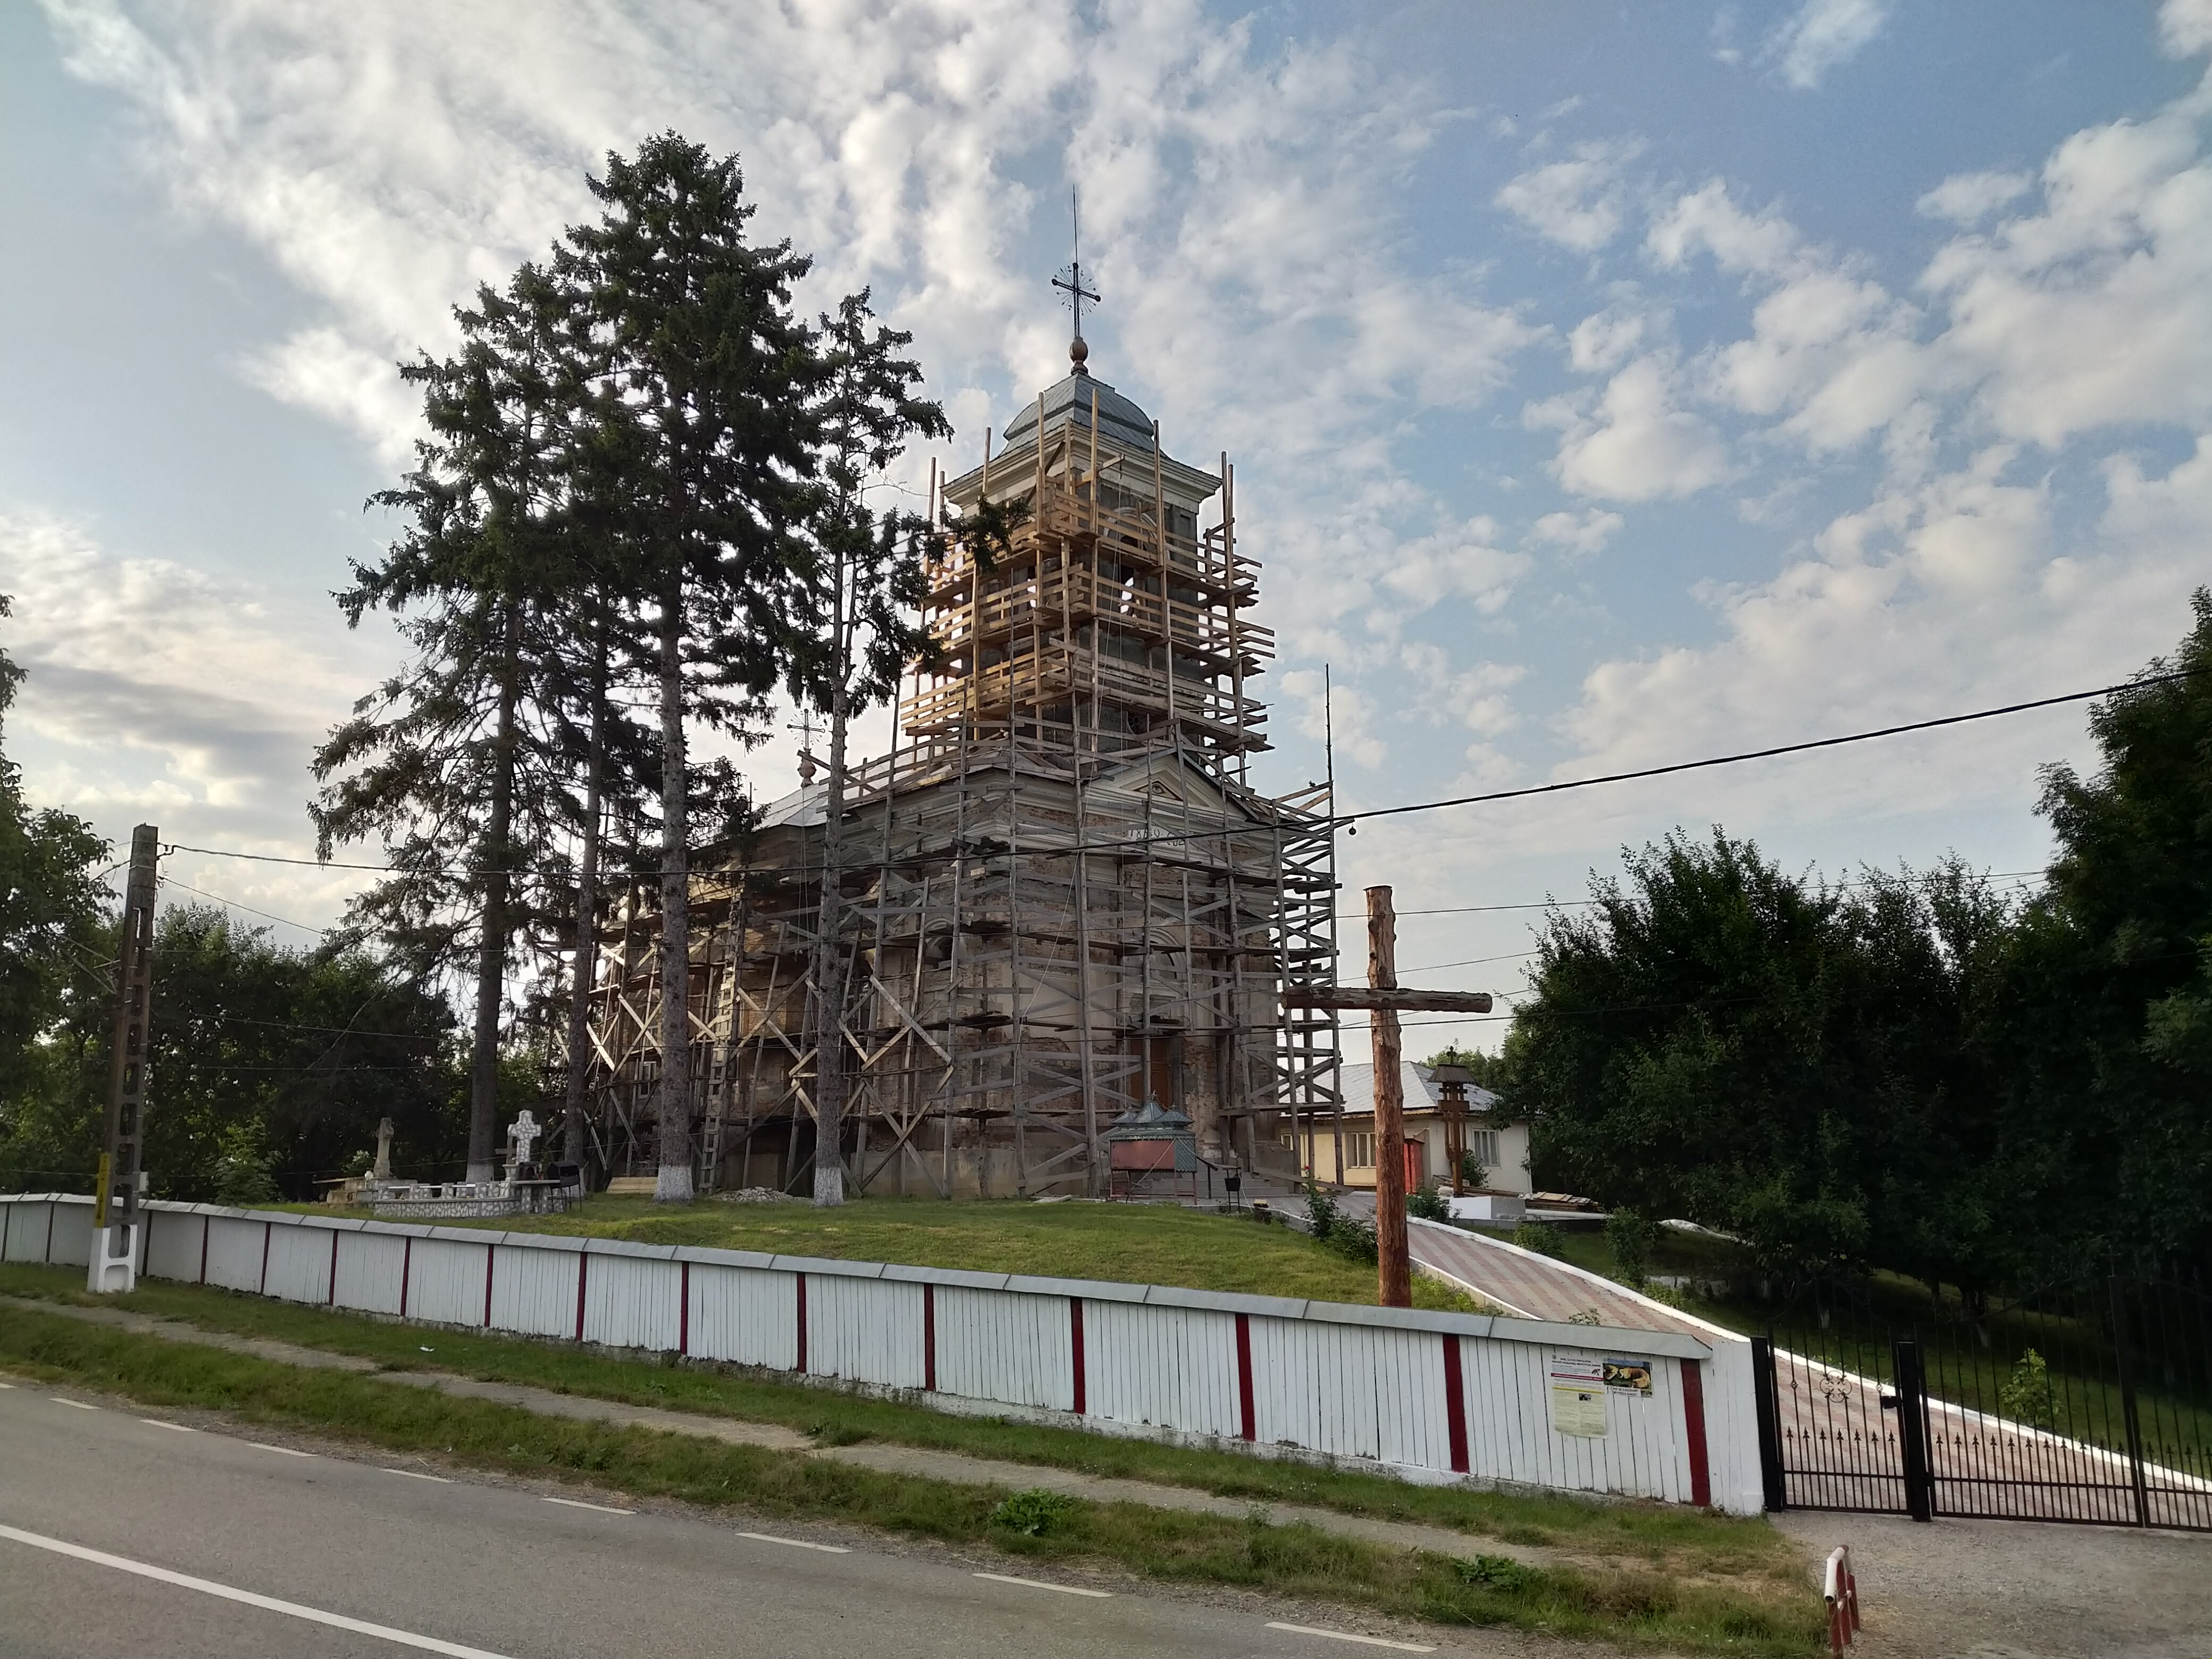 RO, Biserică în reconstrucție din satul Dumești